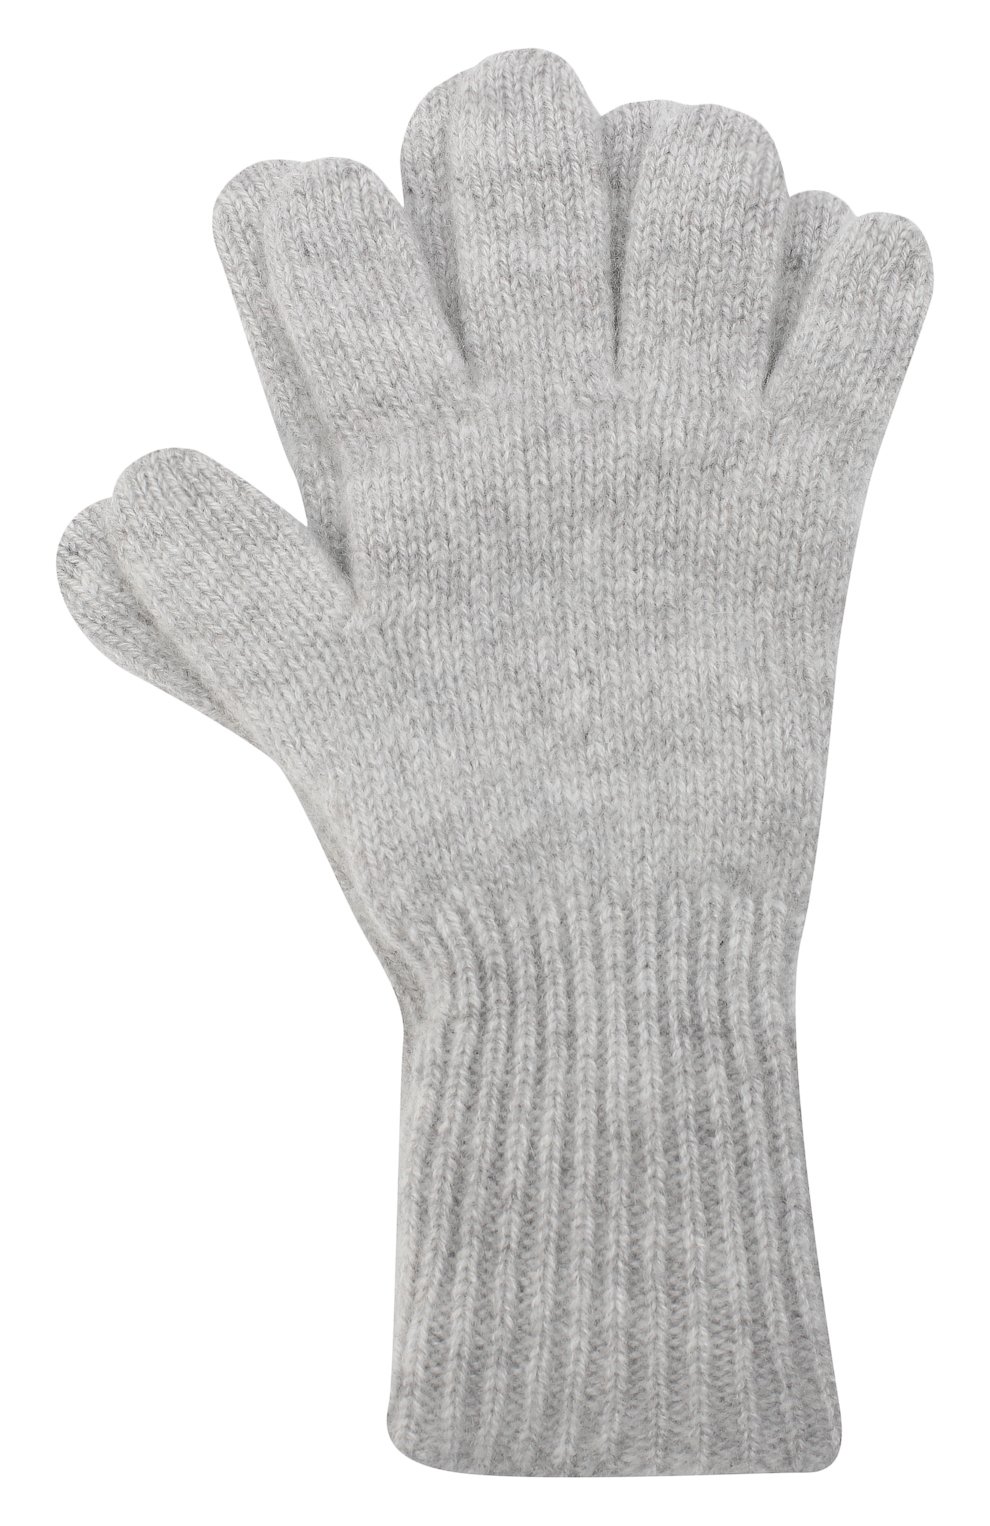 Детские кашемировые перчатки GIORGETTI CASHMERE светло-серого цвета, арт. MB1699/8A | Фото 1 (Материал: Текстиль, Кашемир, Шерсть)